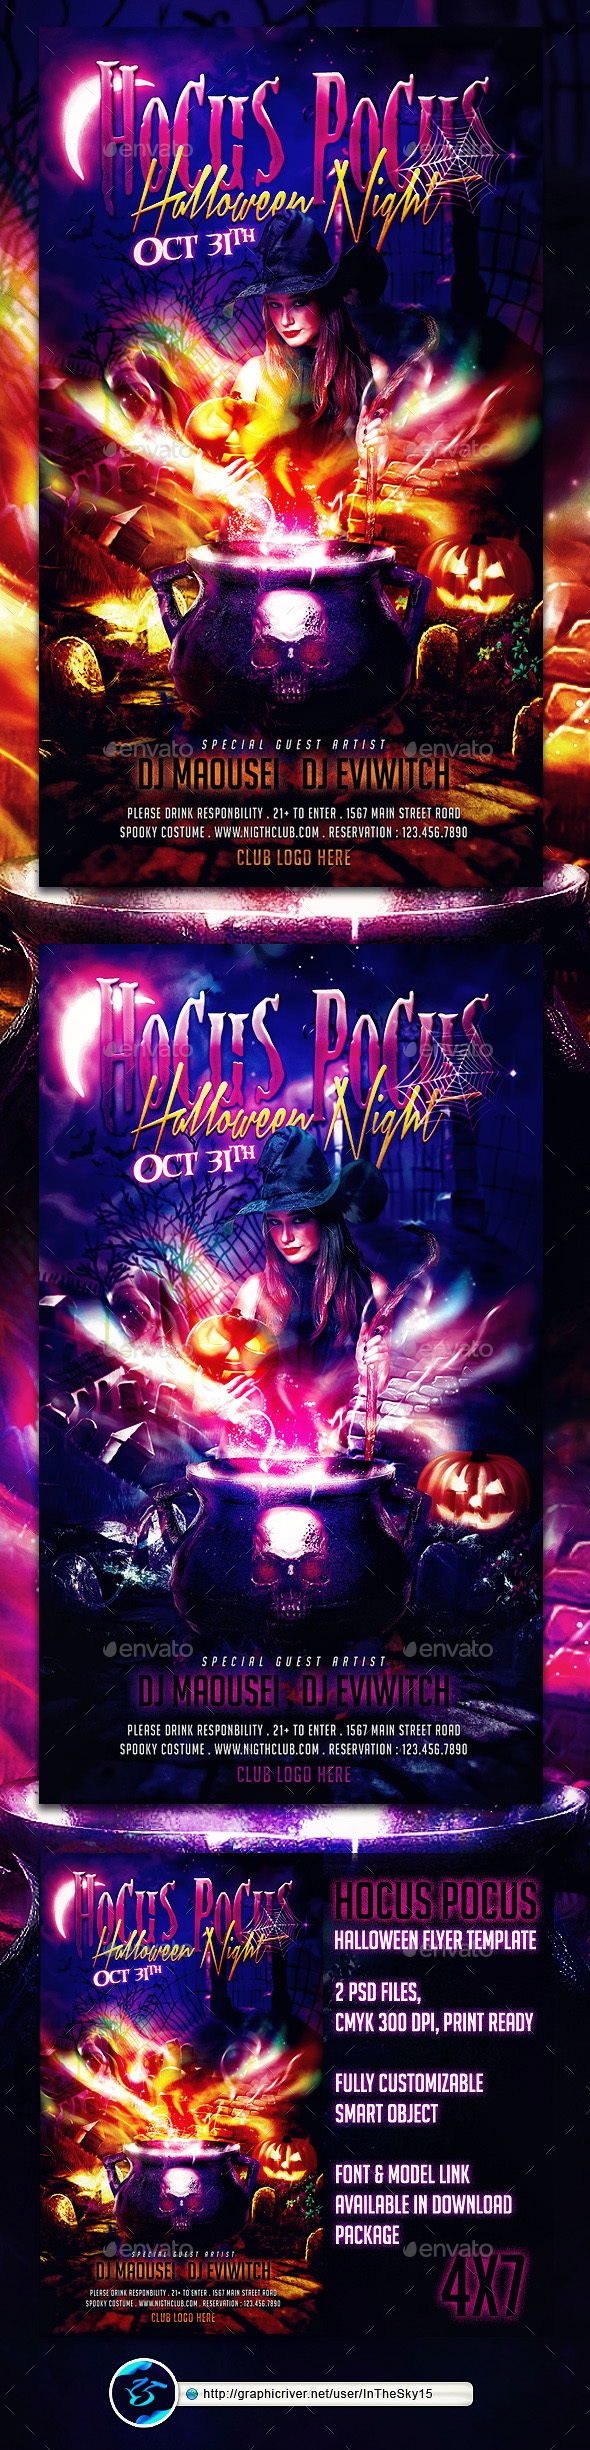 Hocus Pocus Halloween Flyer Template